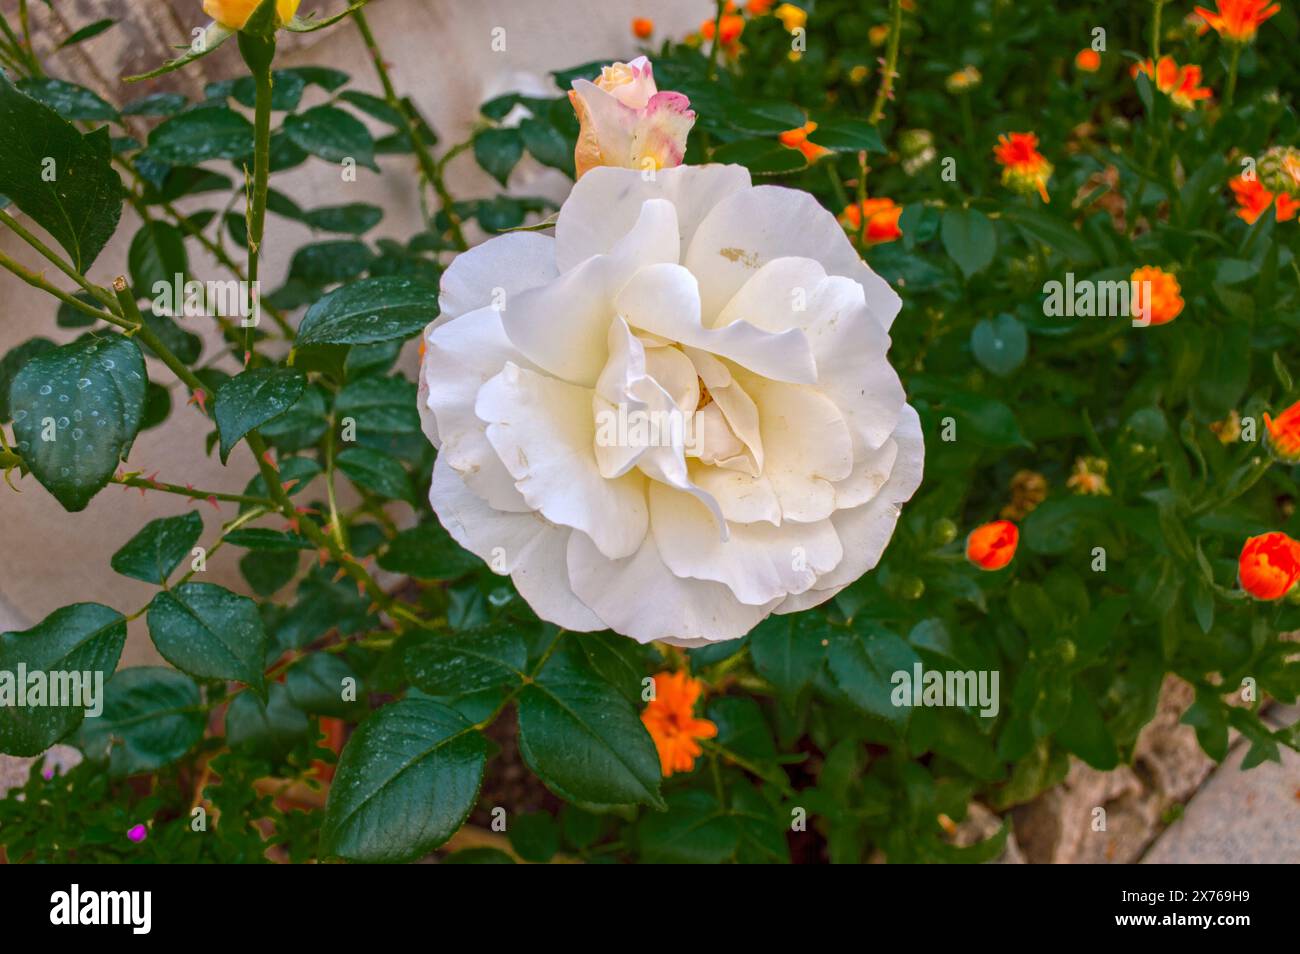 Garden flowers, white rose Stock Photo